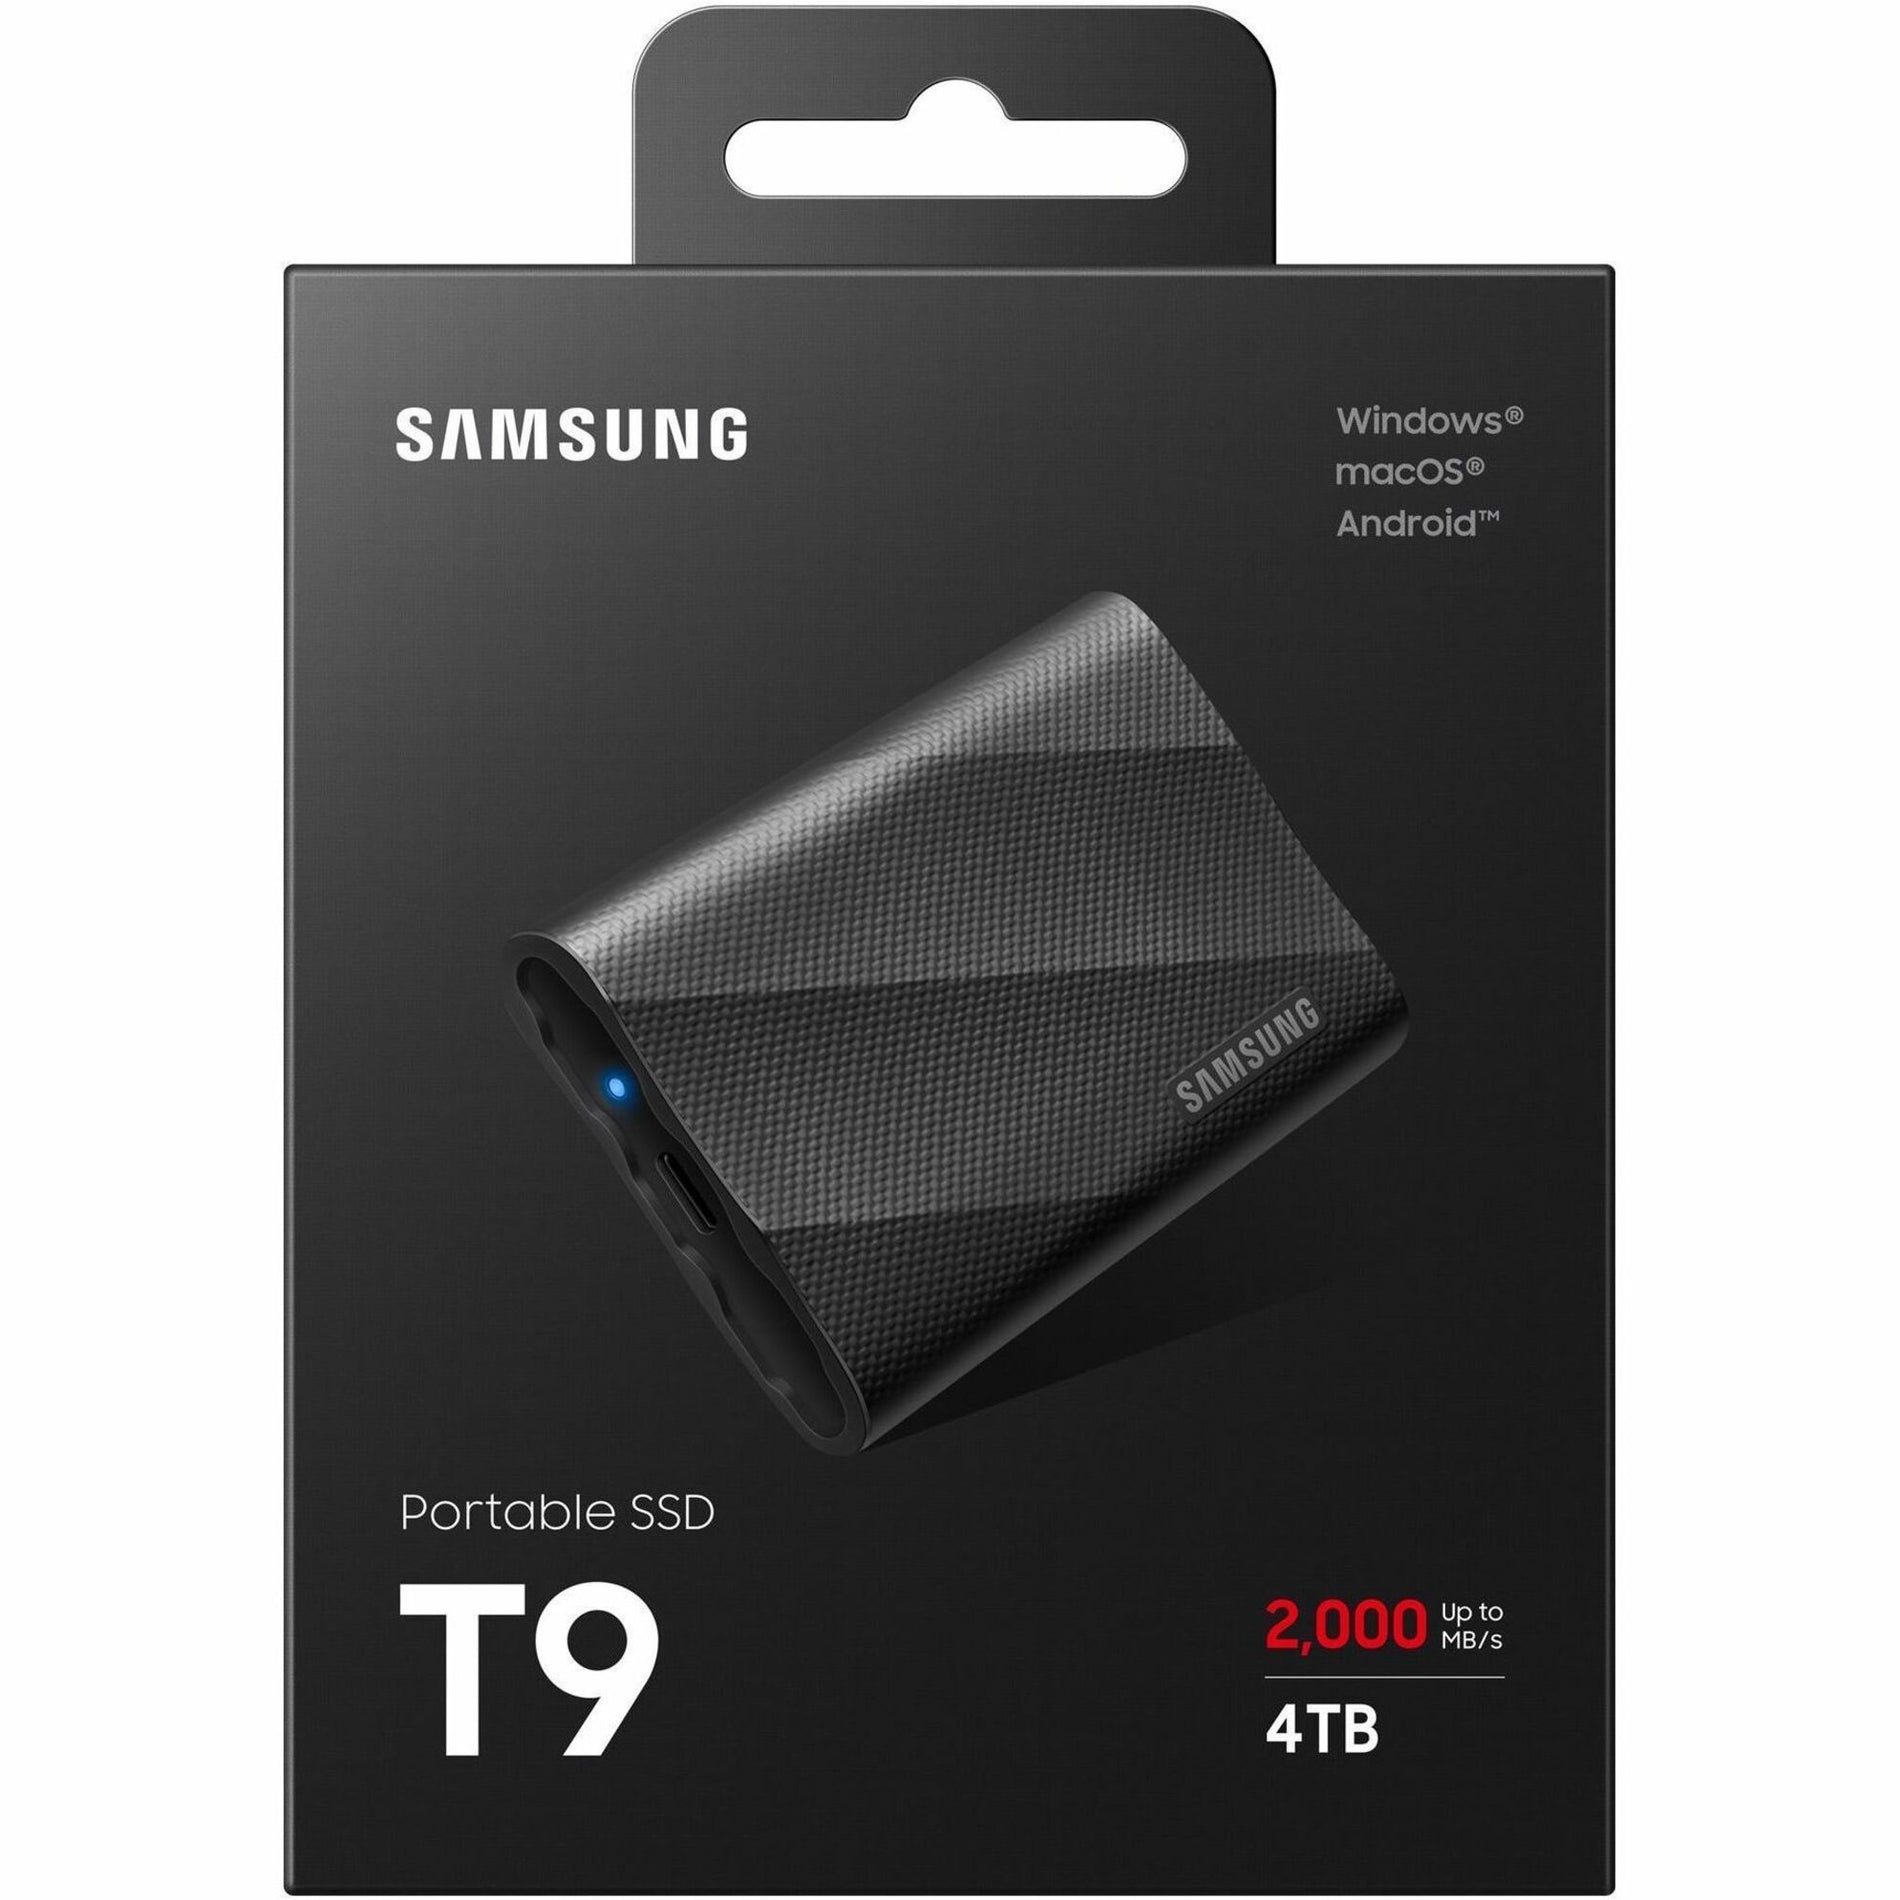 Samsung MU-PG4T0B/AM Portable SSD T9 USB 3.2 Gen2x2 4TB (Black), 5-Year Warranty, 2000 MB/s Transfer Rate